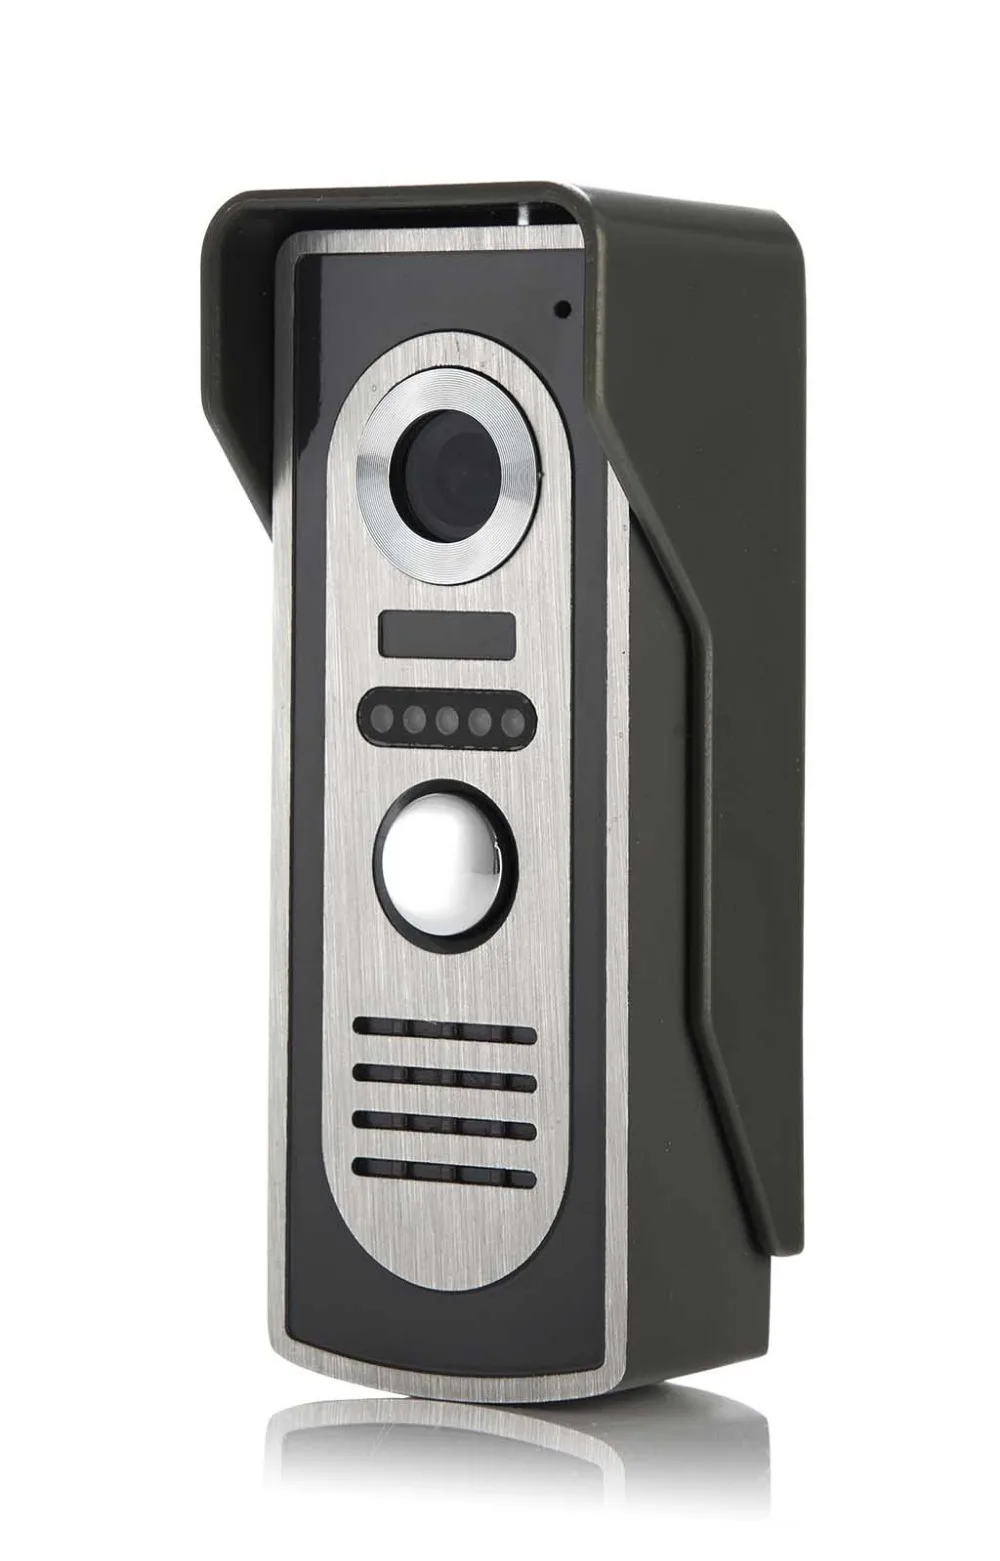 SmartYIBA видеодомофон 7 дюймов проводной видео дверной телефон визуальный видеодомофон дверной звонок монитор камера комплект для домашней безопасности